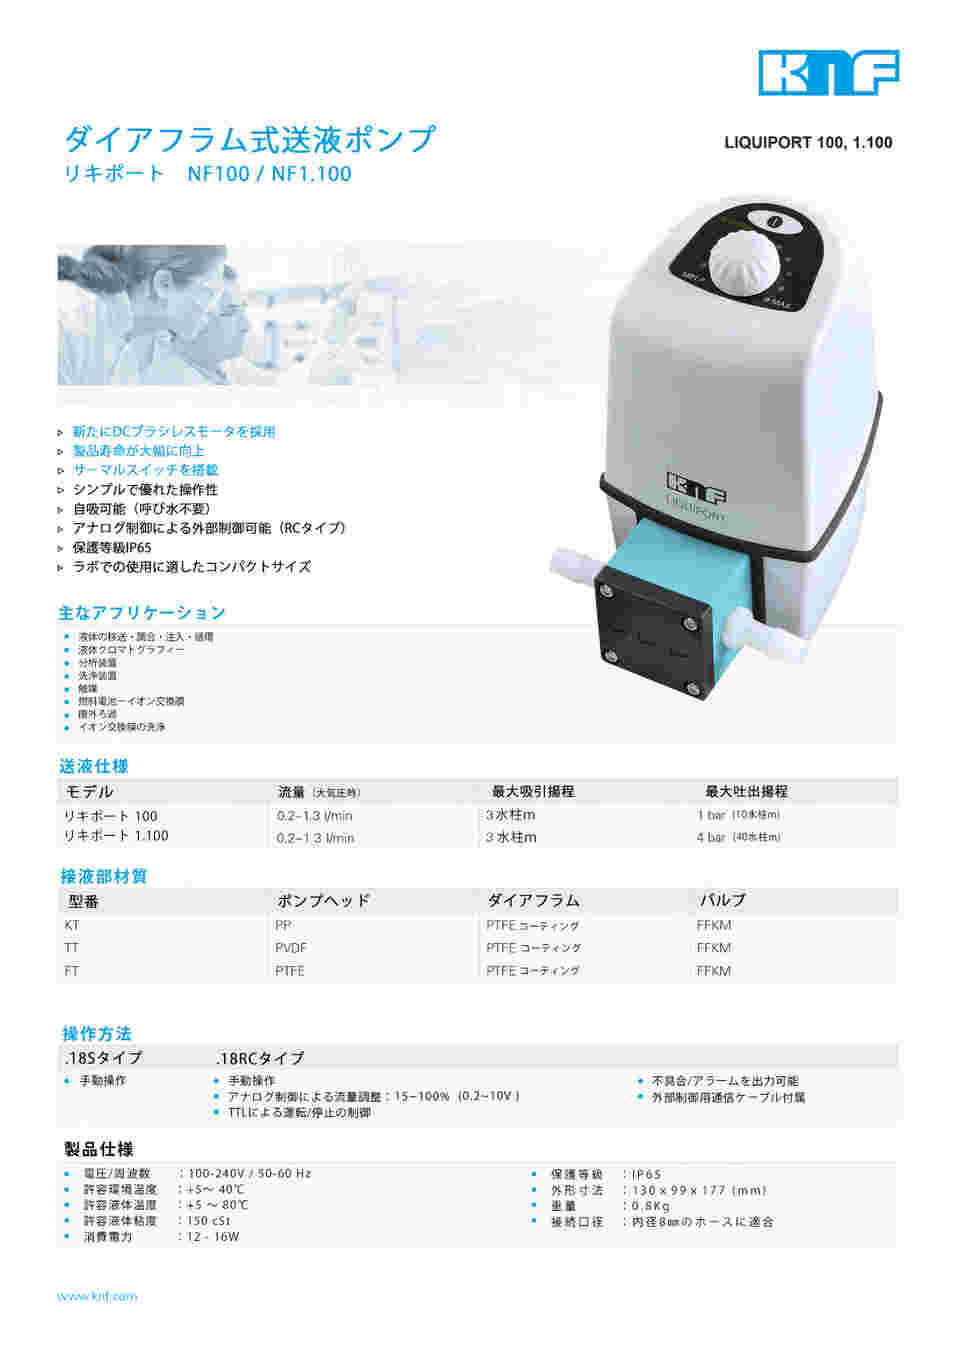 1-9888-04 ダイヤフラム式送液ポンプ 3000mL/min NF300TT.18RC 【AXEL 